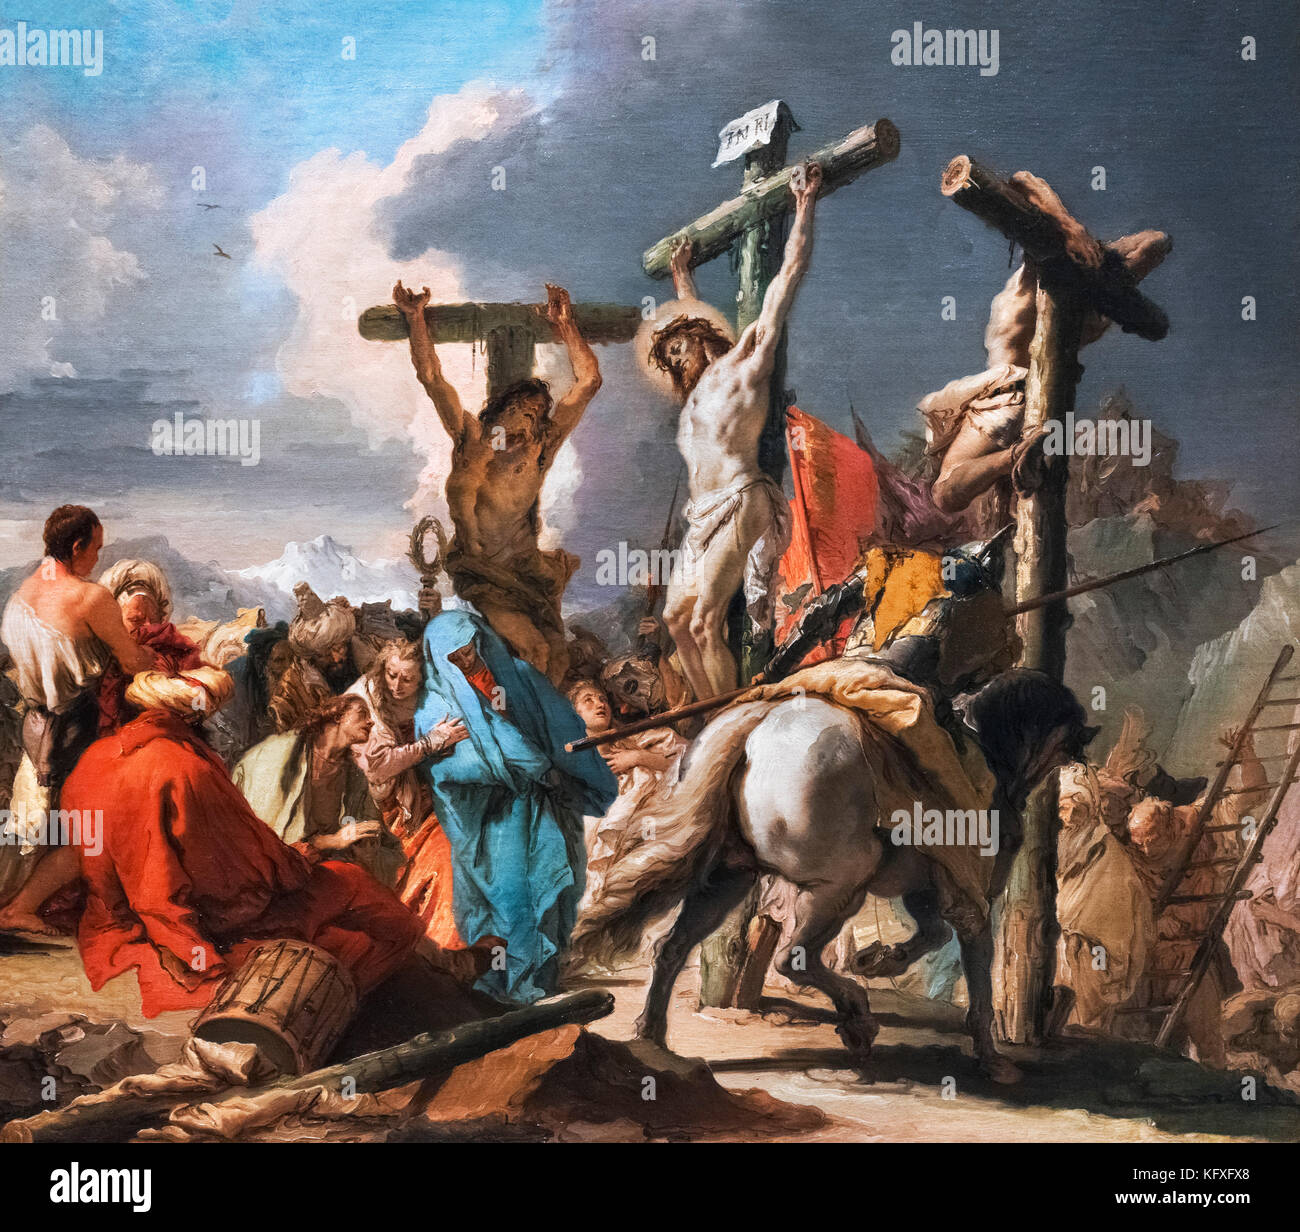 Crucifixion by Giambattista Tiepolo (1696-1770) and Giandomenico Tiepolo (1727-1804), oil on canvas, c.1745-50 Stock Photo